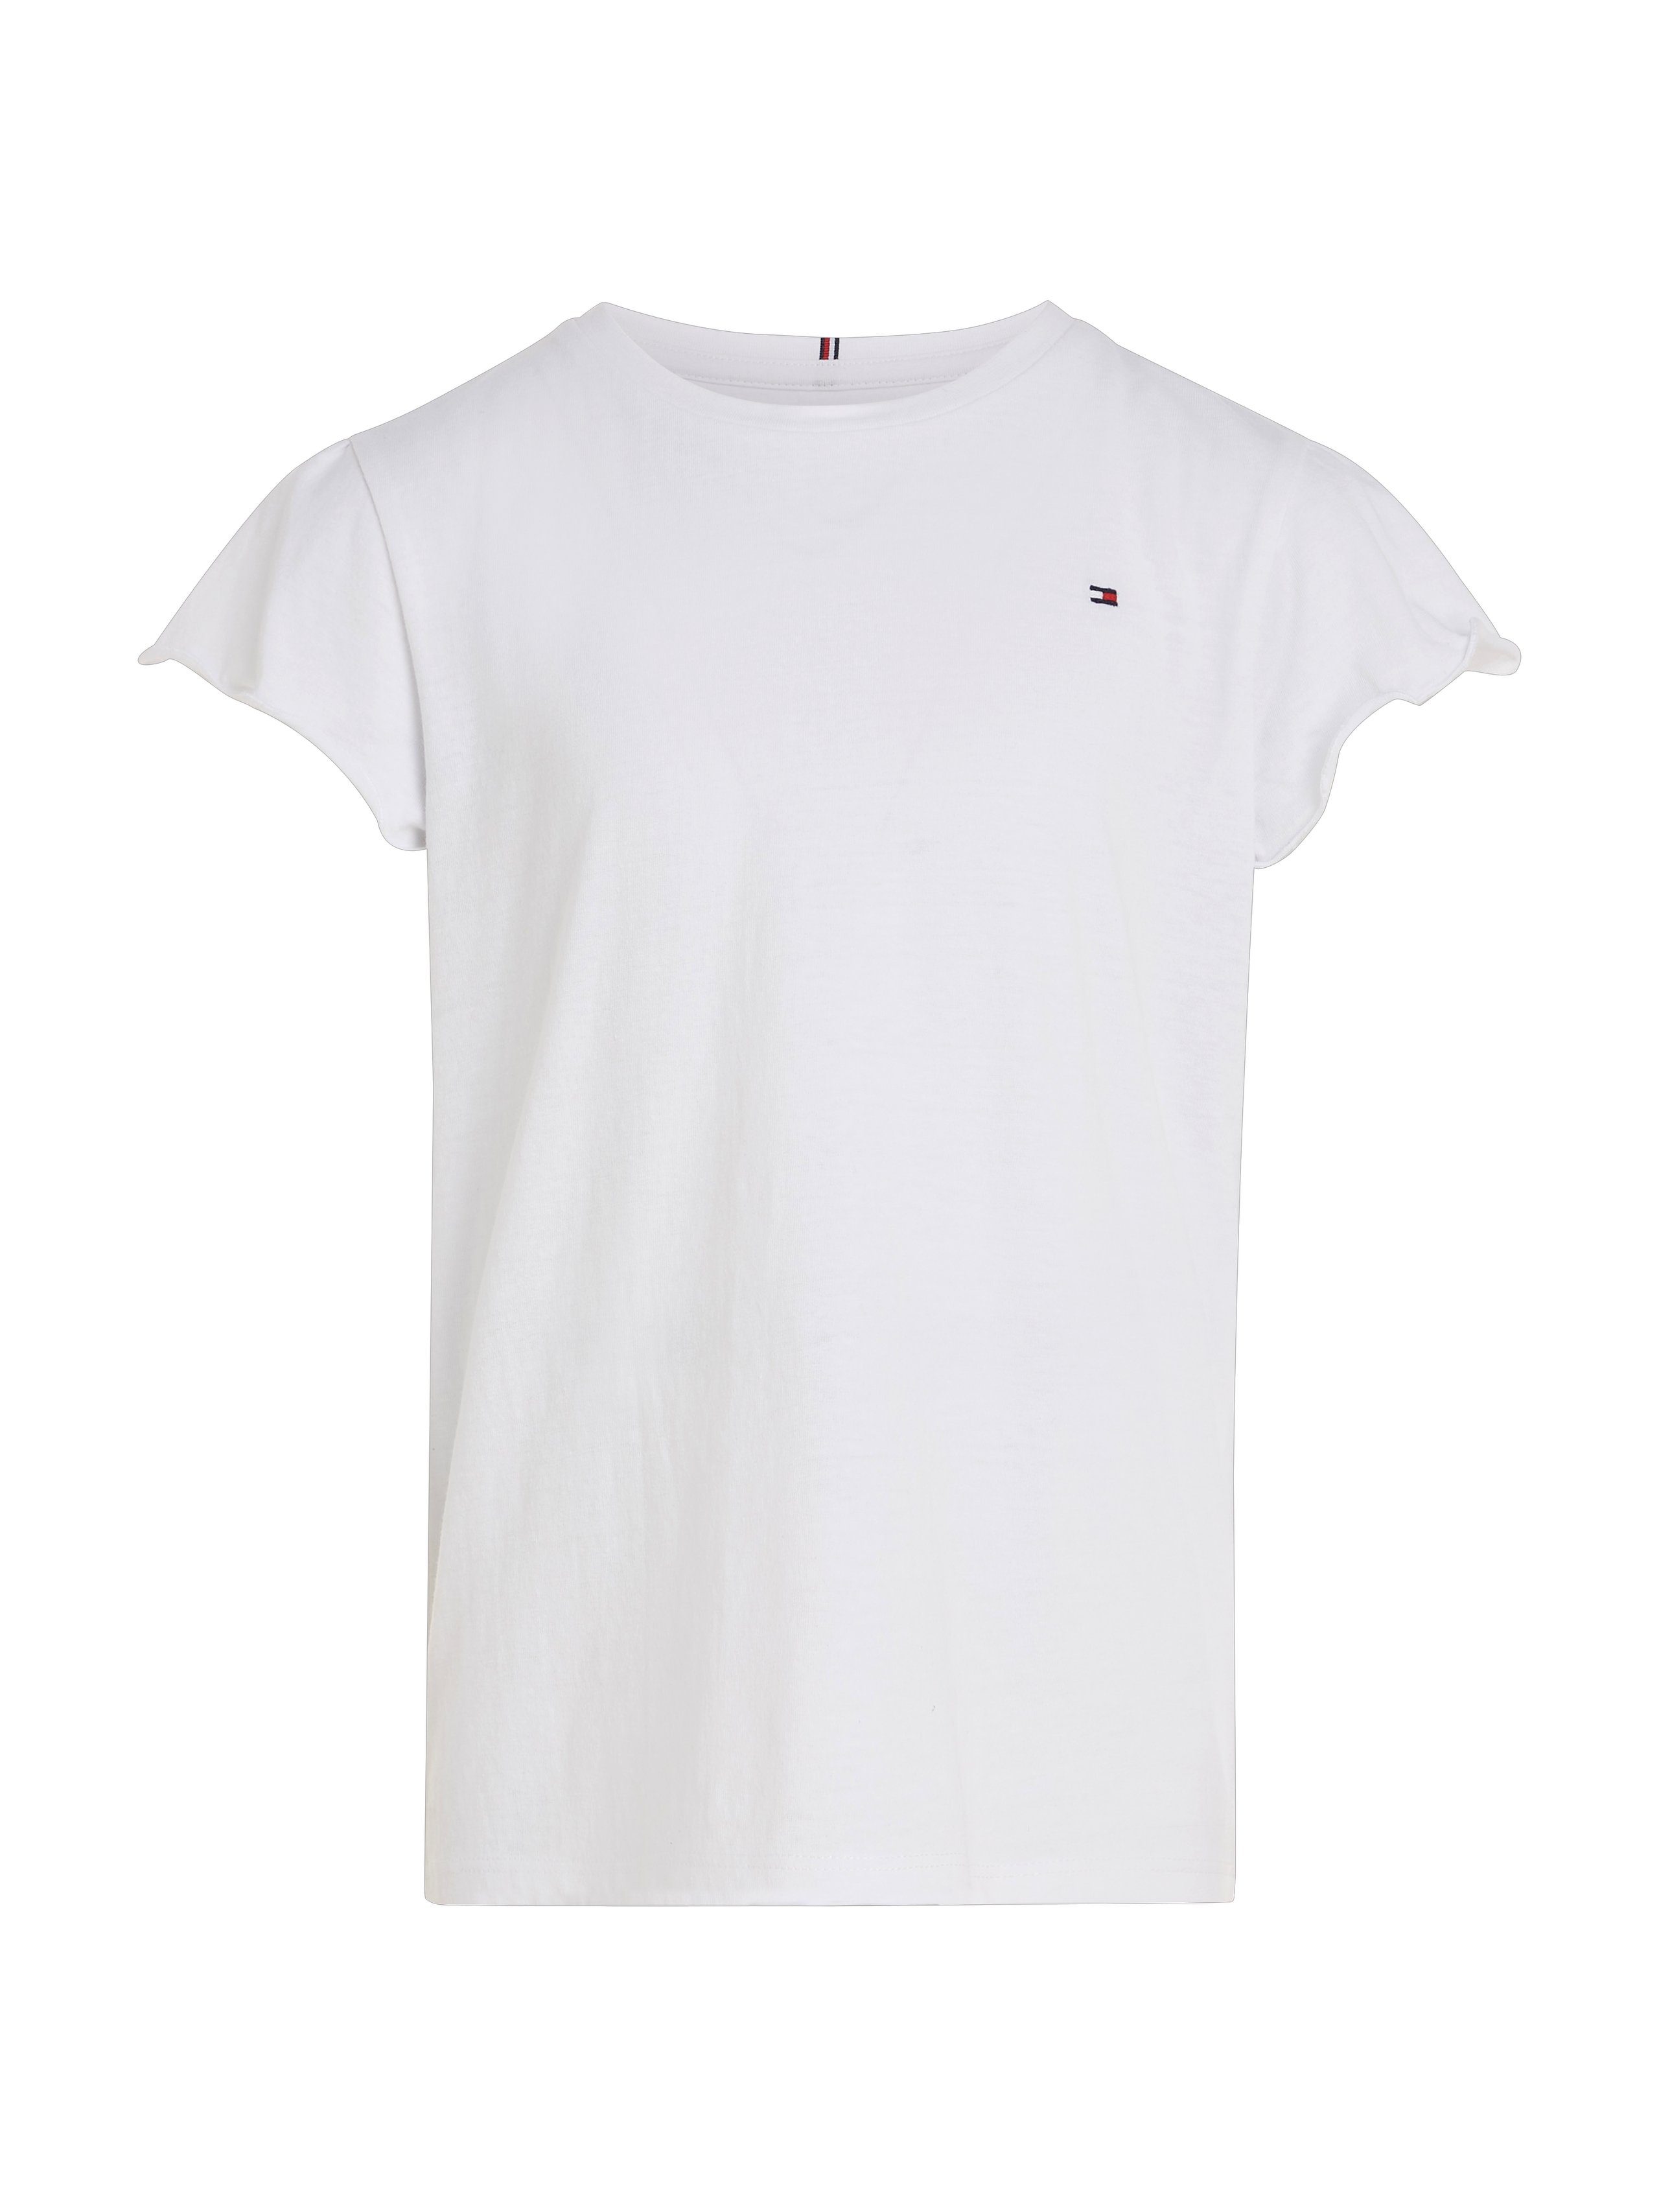 ESSENTIAL TOP T-Shirt white für RUFFLE Hilfiger SLEEVE Tommy Babys